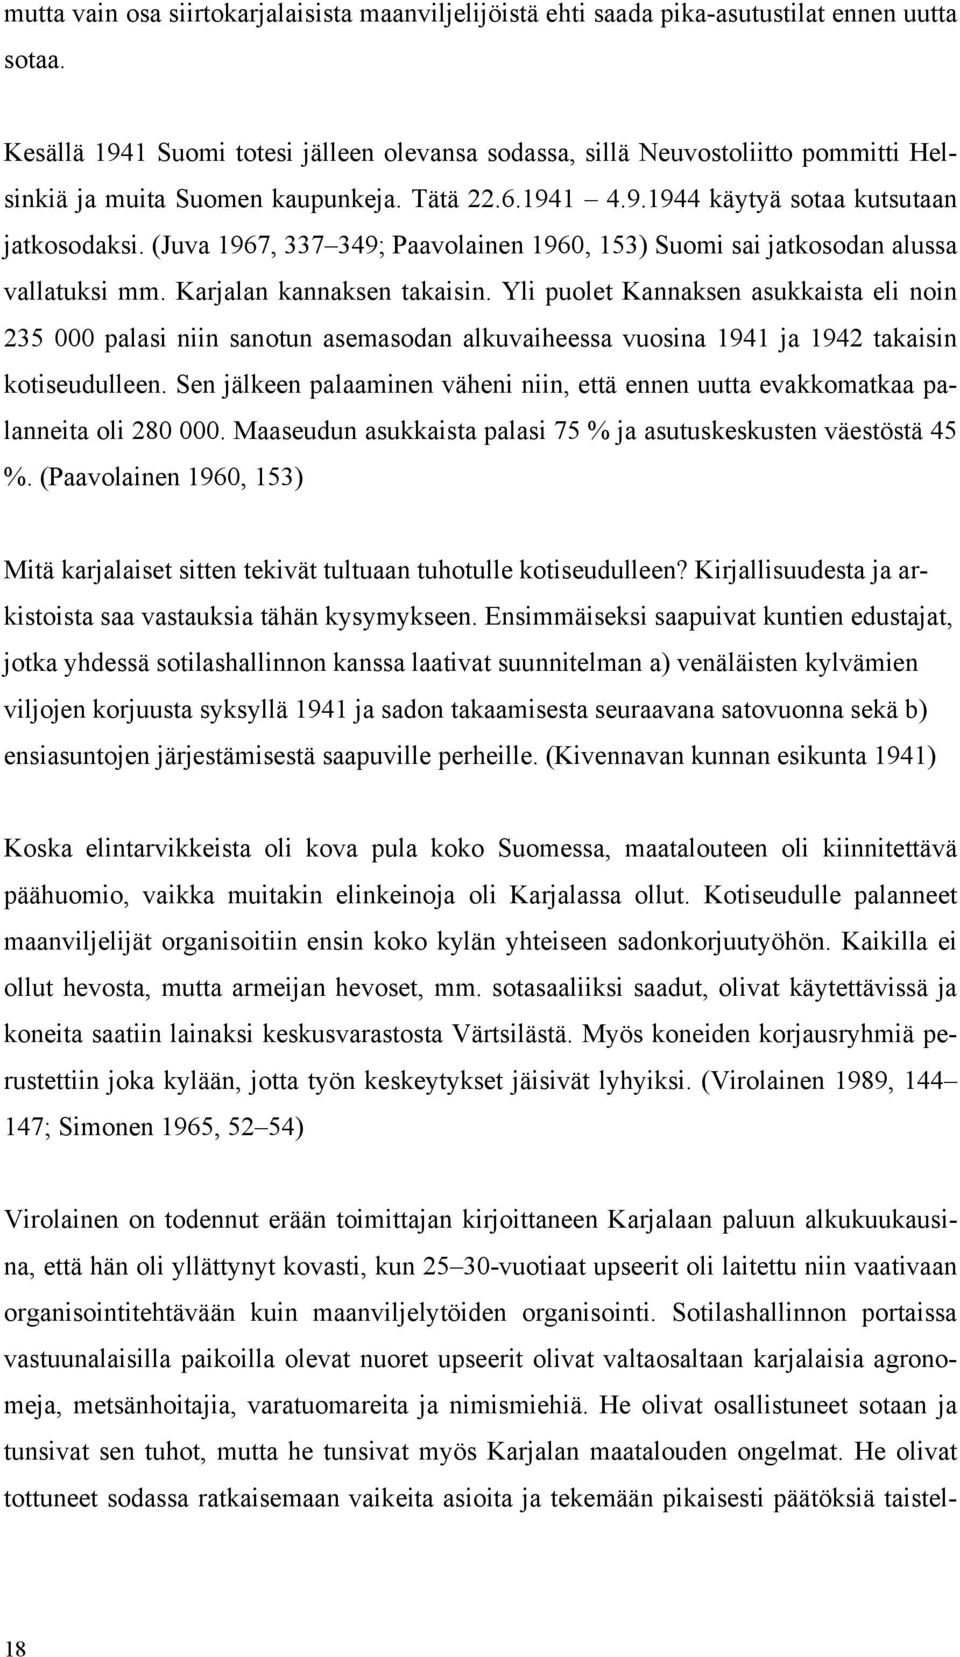 (Juva 1967, 337 349; Paavolainen 1960, 153) Suomi sai jatkosodan alussa vallatuksi mm. Karjalan kannaksen takaisin.